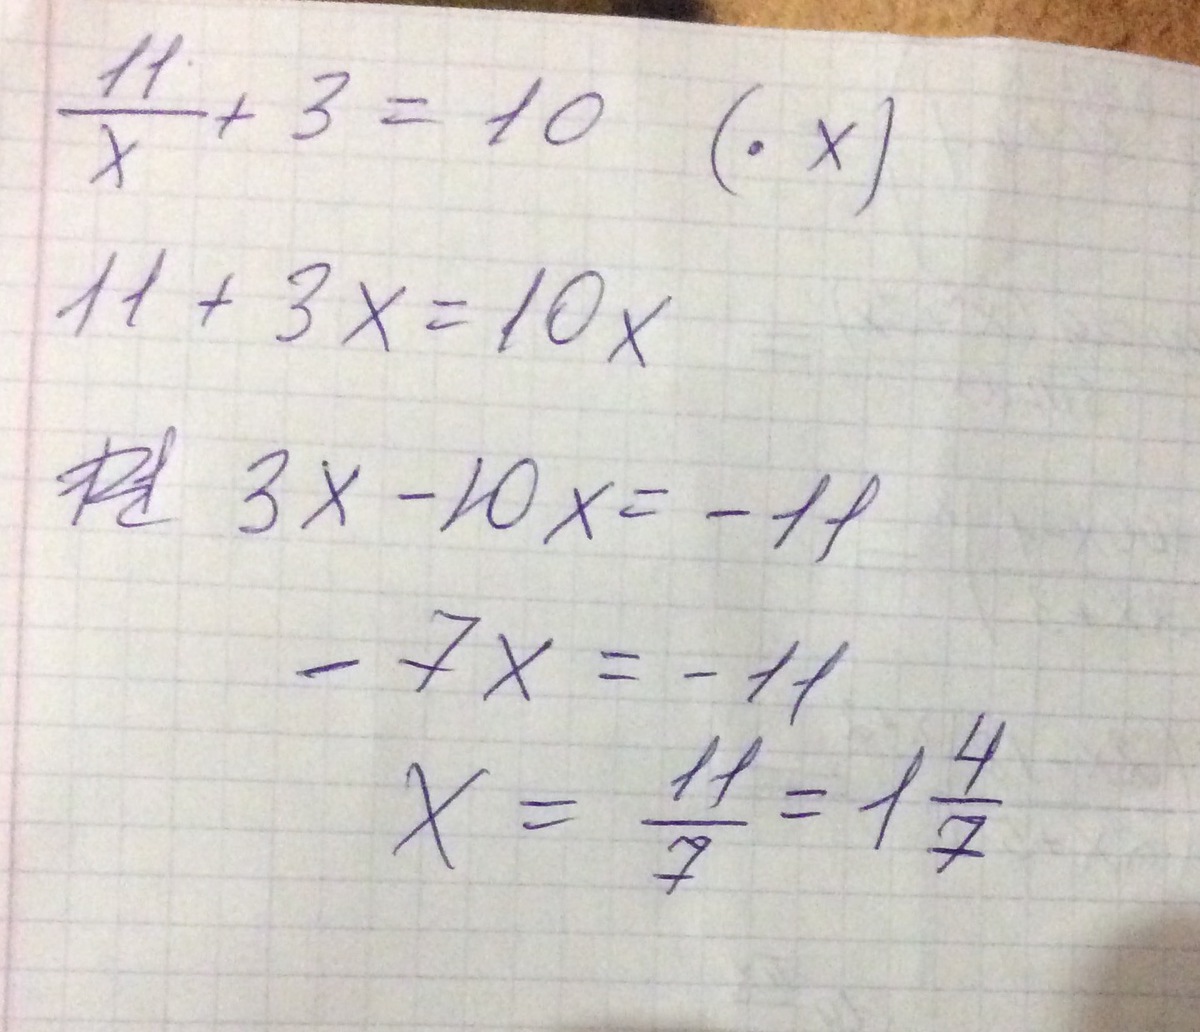 10x 11 0. 11.Найдите корни уравнения:. 11/Х+3=10. Найдите корень уравнения 11/х+3 10. Найдите корень уравнения 11/х+3 равно 10.